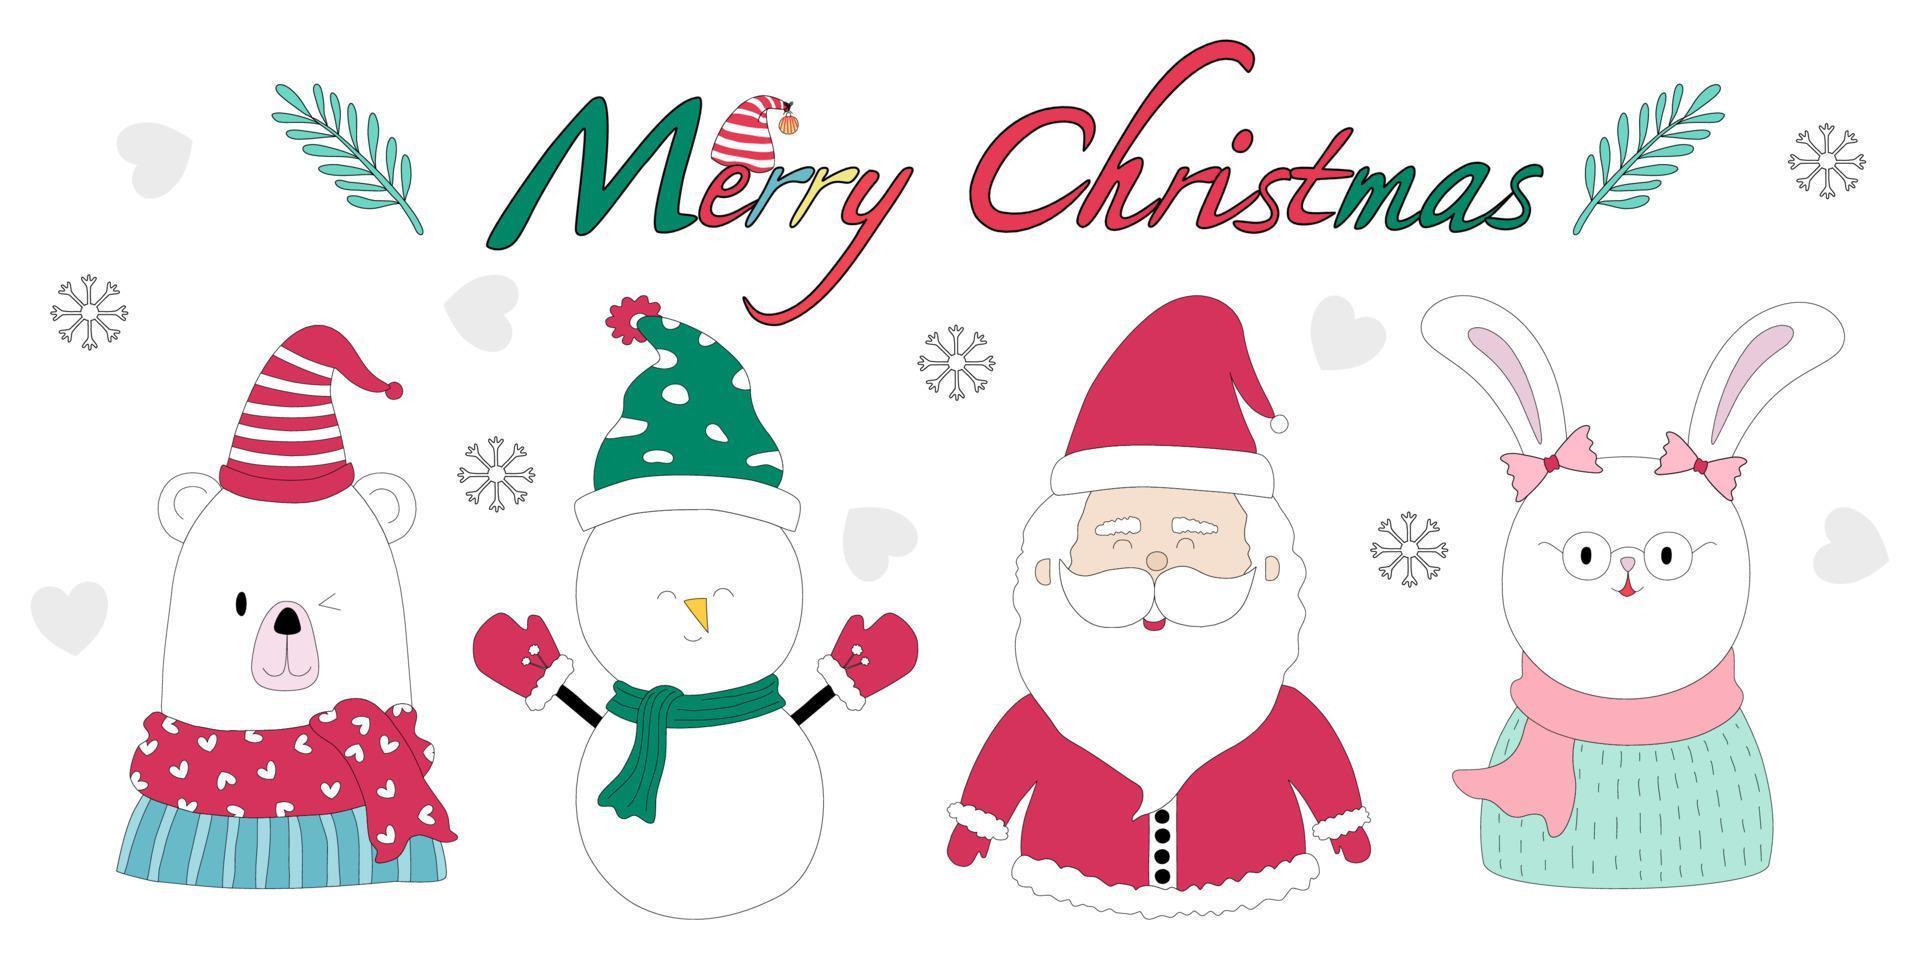 Feliz Navidad con una linda imagen prediseñada de personajes diseñada en estilo doodle que se puede aplicar a diferentes temas navideños según tus preferencias. vector